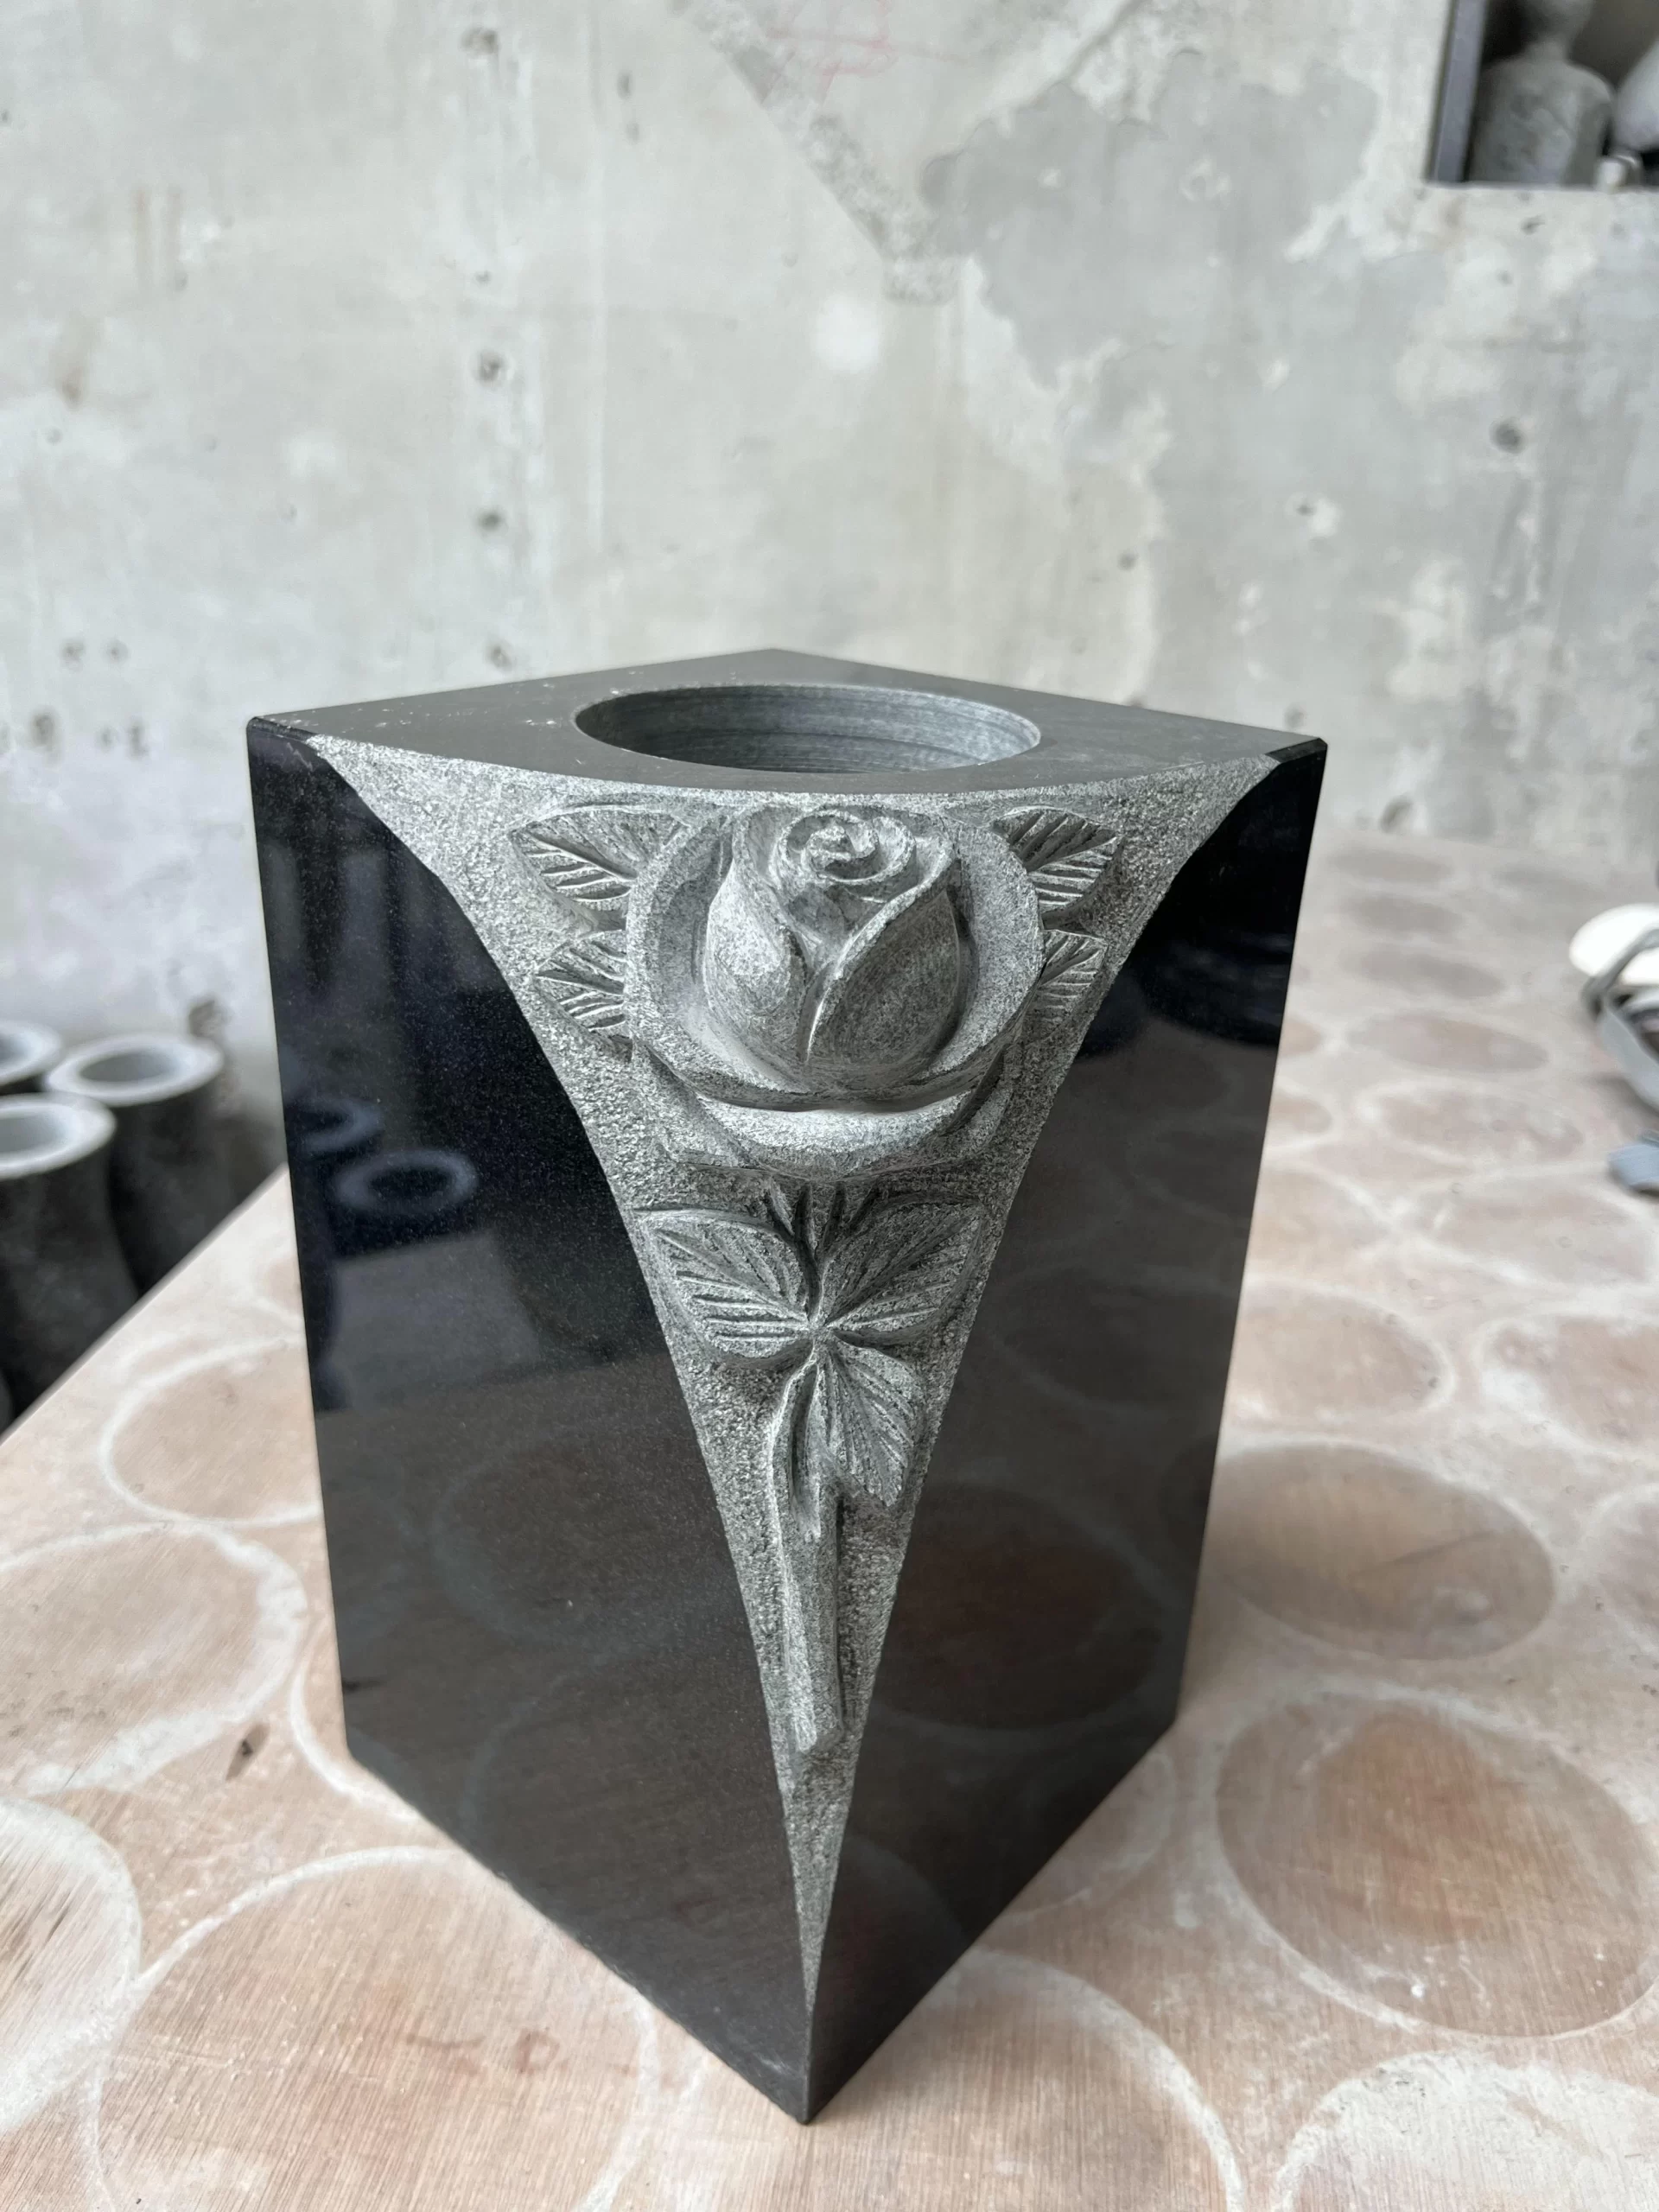 Square Black Granite Memorial Vase with Carved Rose